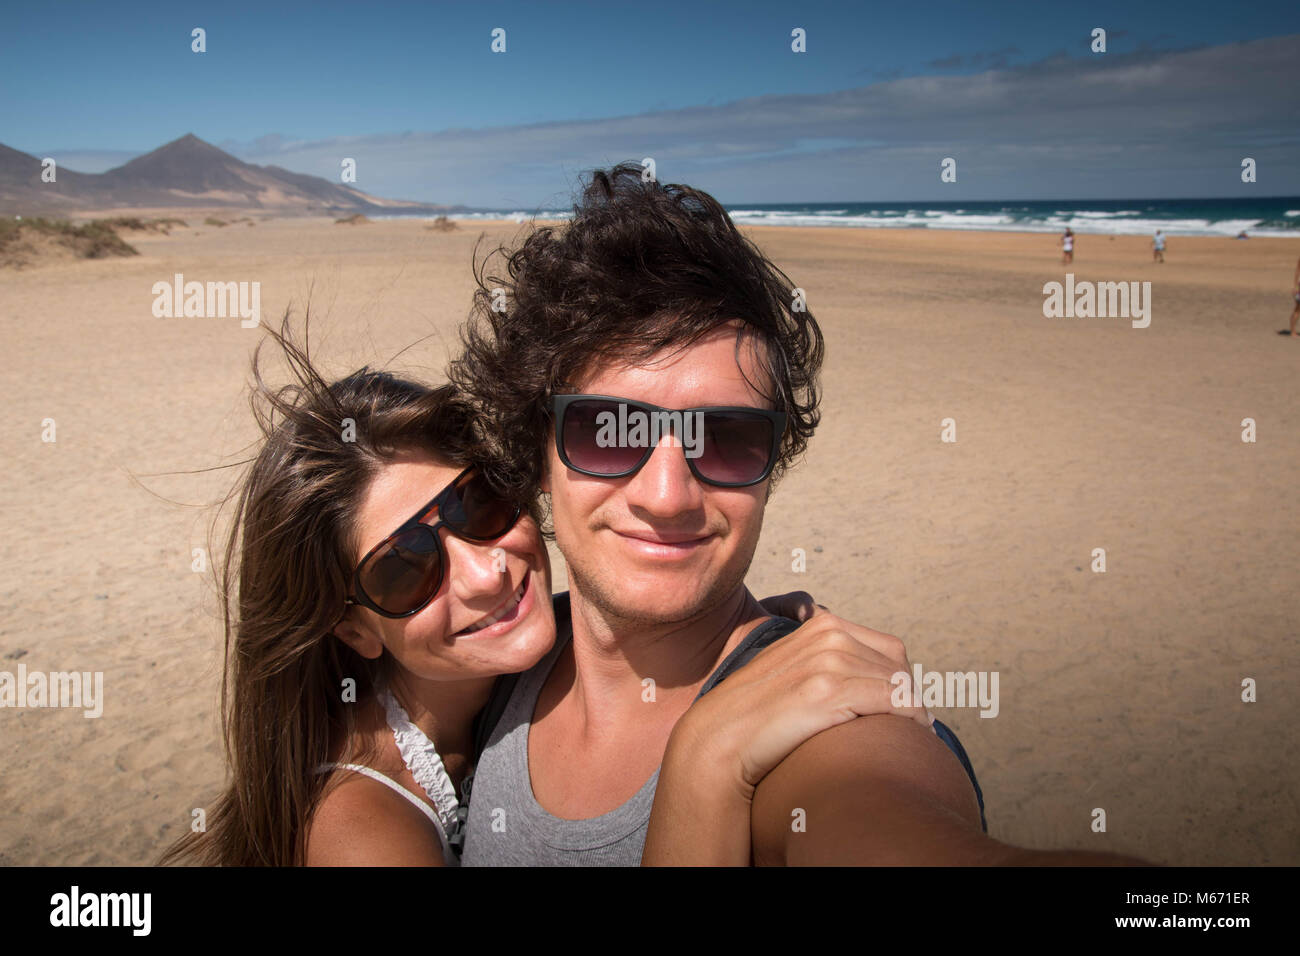 Glücklich, das junge Paar portrait am Strand. Medium close-up mit malerischem Hintergrund. Fuerteventura, Kanarische Inseln, Spanien. Stockfoto